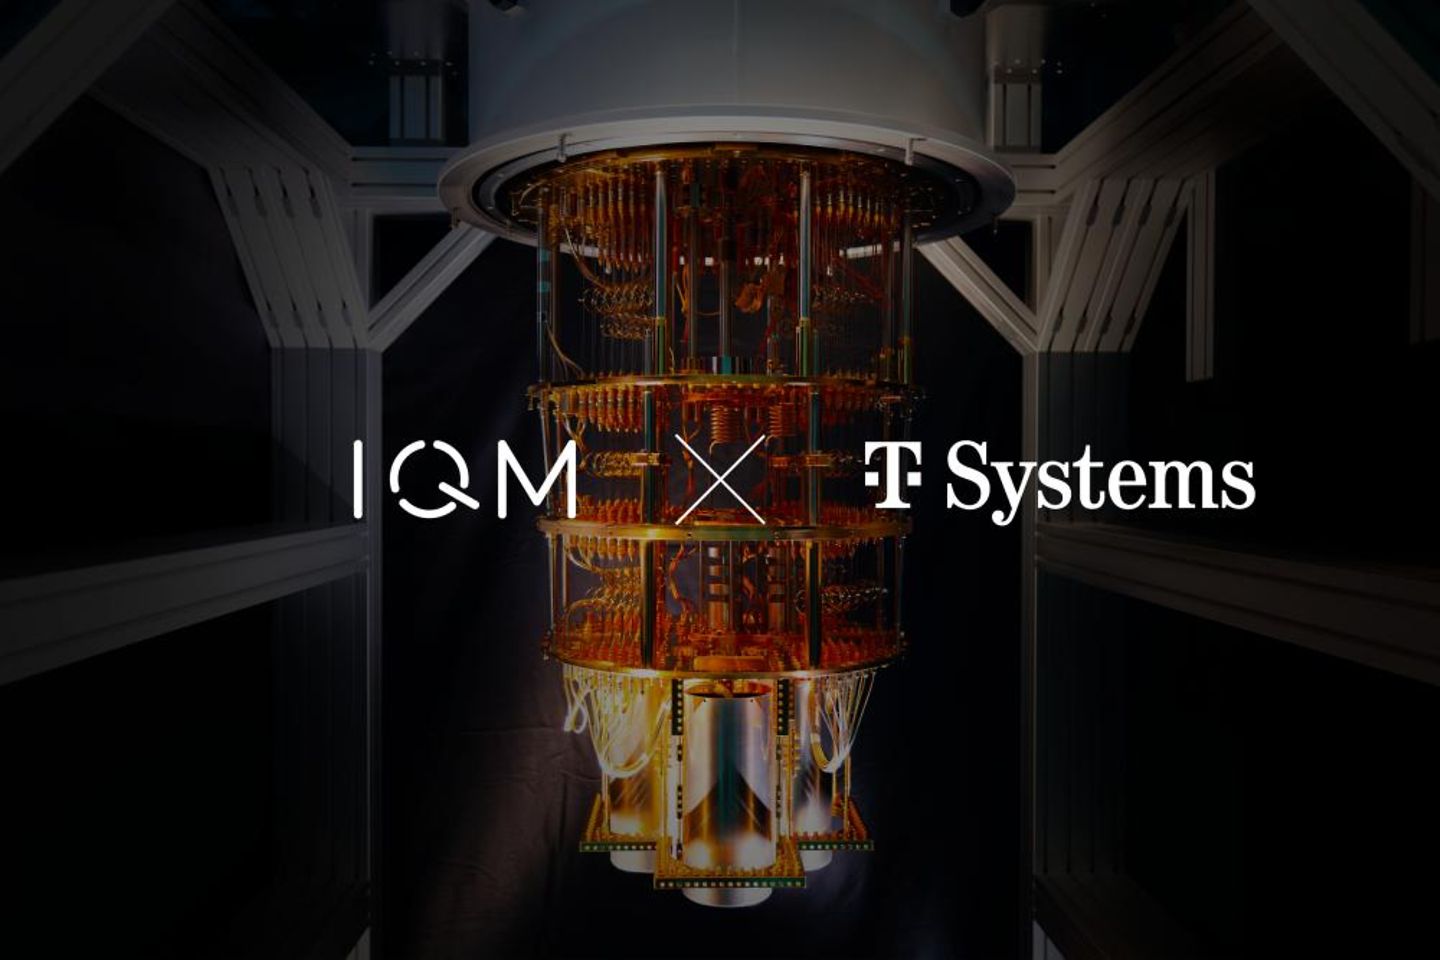 Représentation d'un ordinateur quantique avec IQM et le logo T-Systems